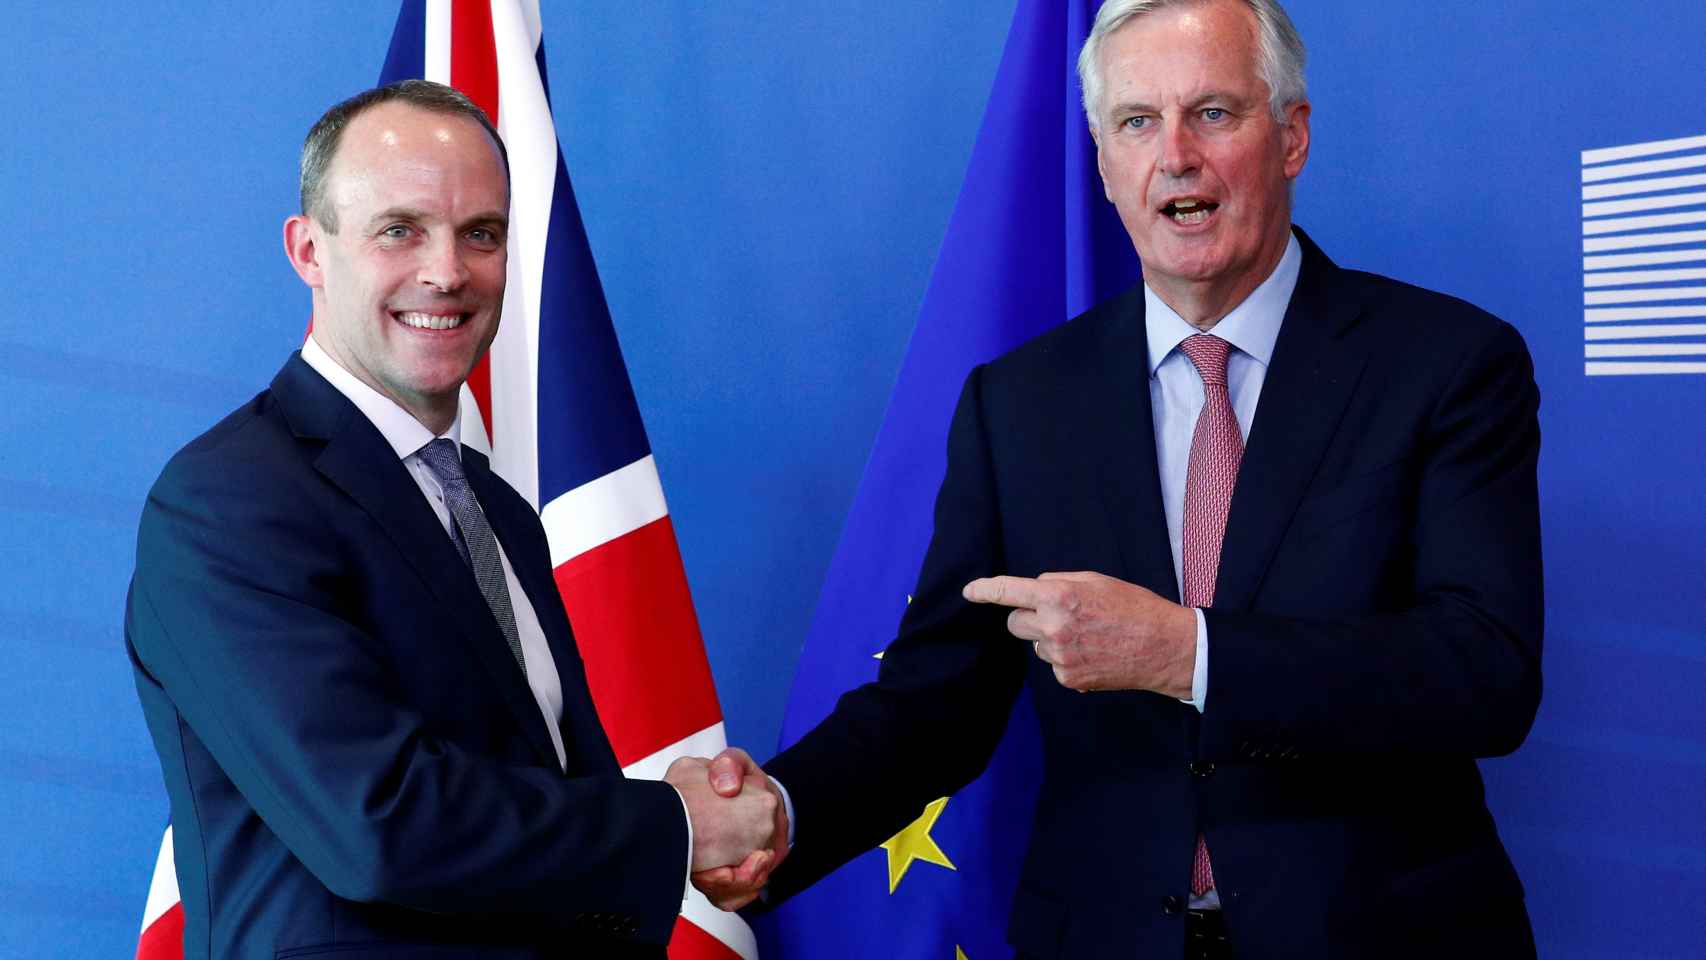 Michel Barnier saluda en Bruselas al nuevo negociador británico, Dominique Raab